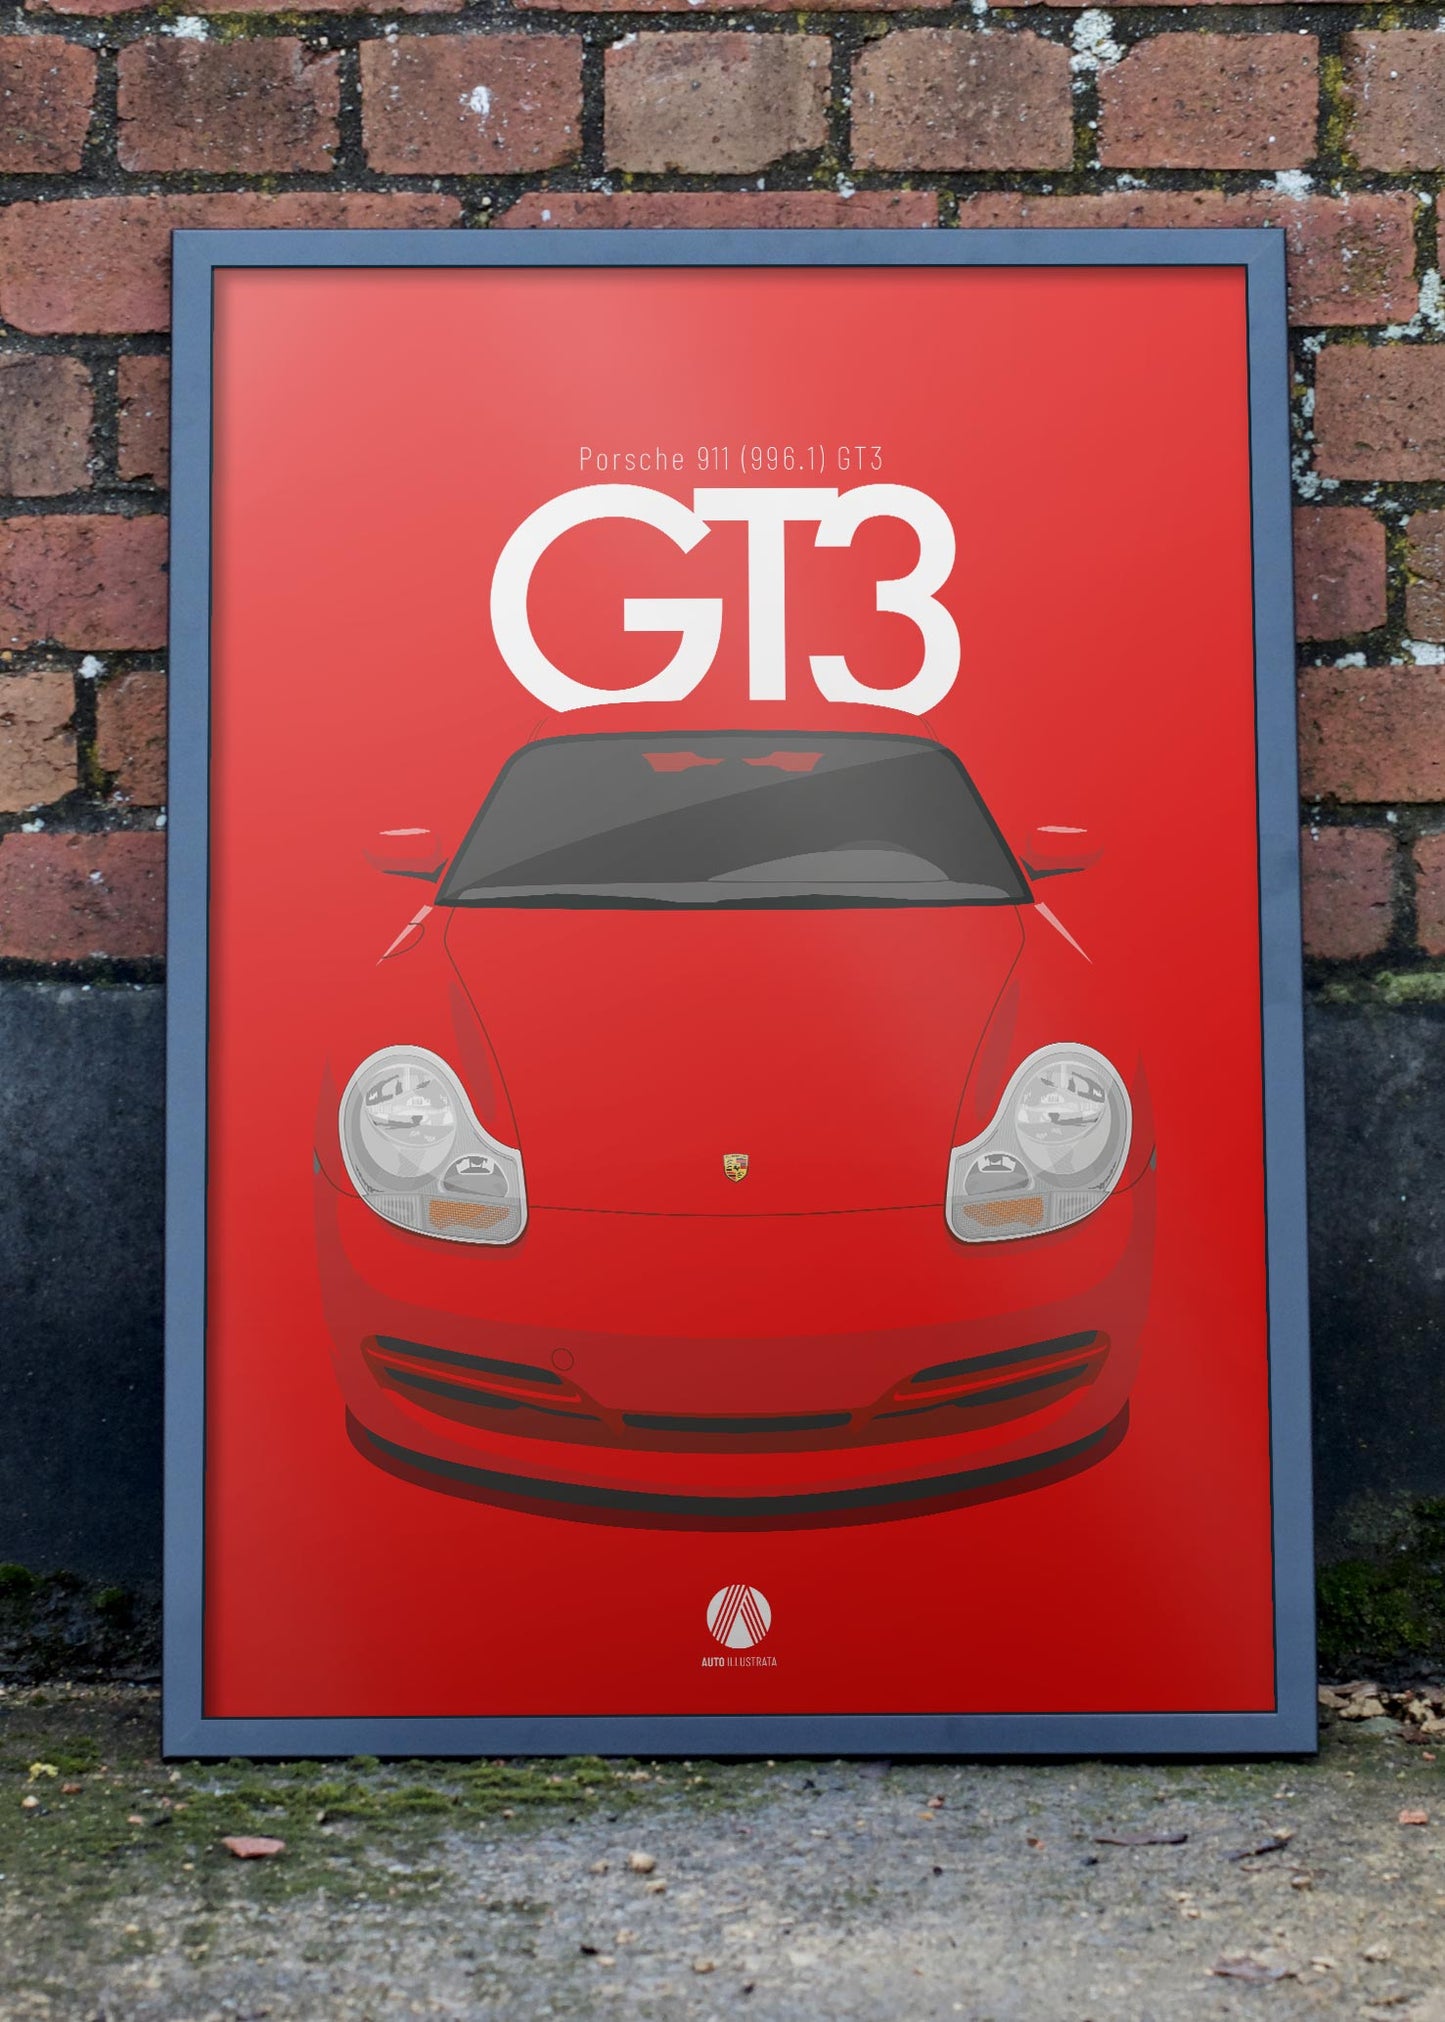 1999 Porsche 911 (996.1) GT3 Guards Red - poster print